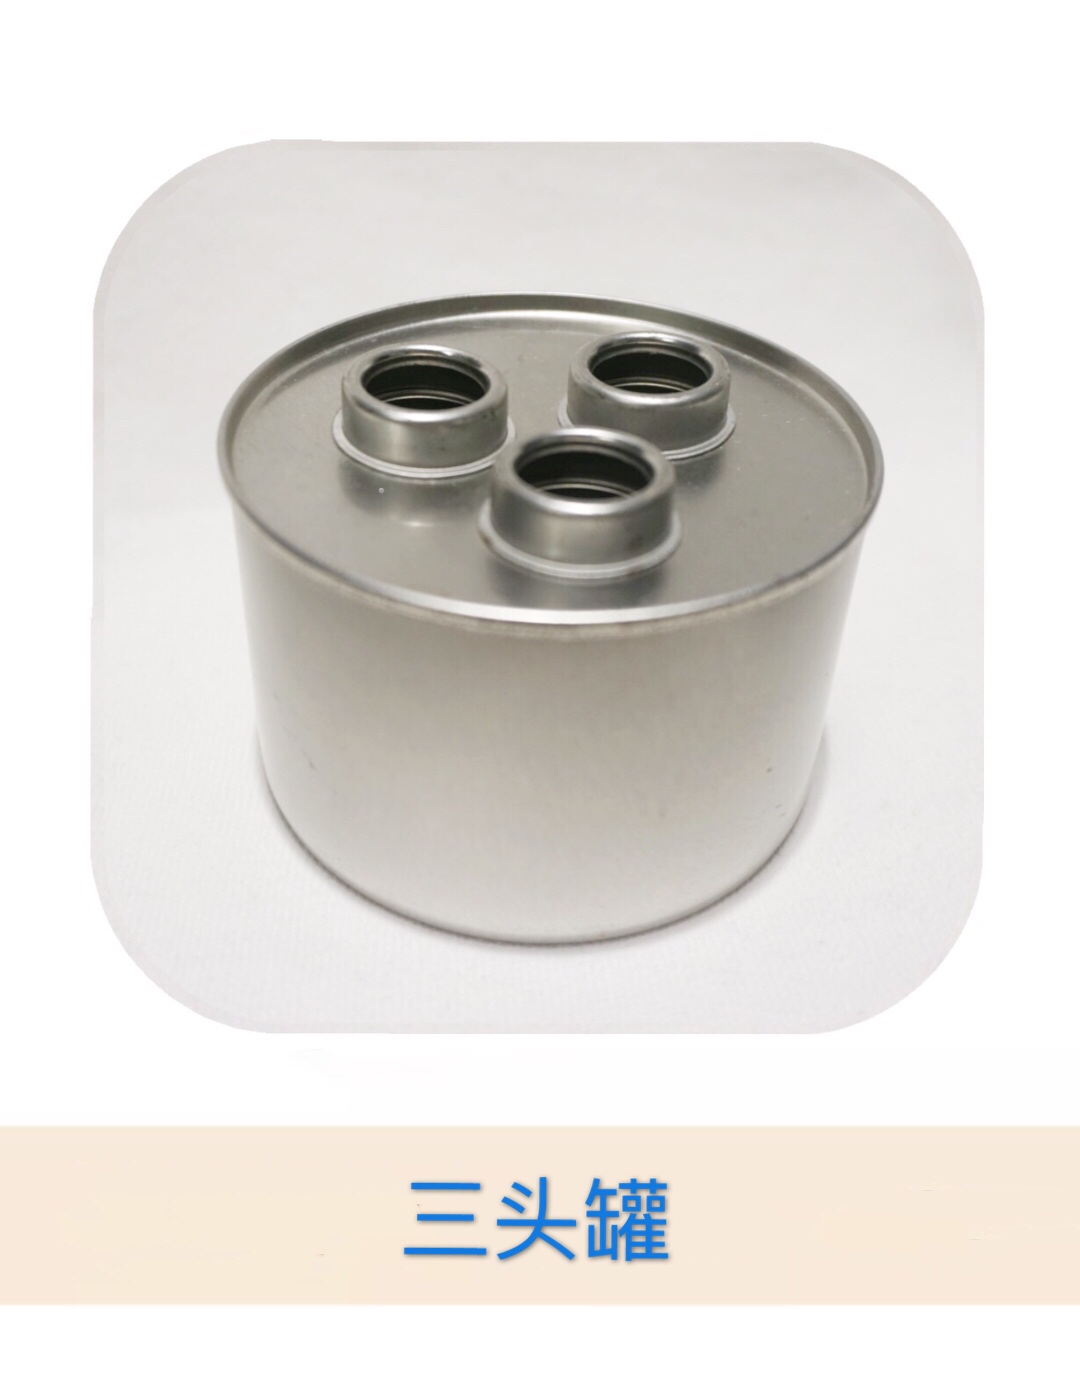 马口铁制品 环保油罐 可定制 固体 液体酒精罐2